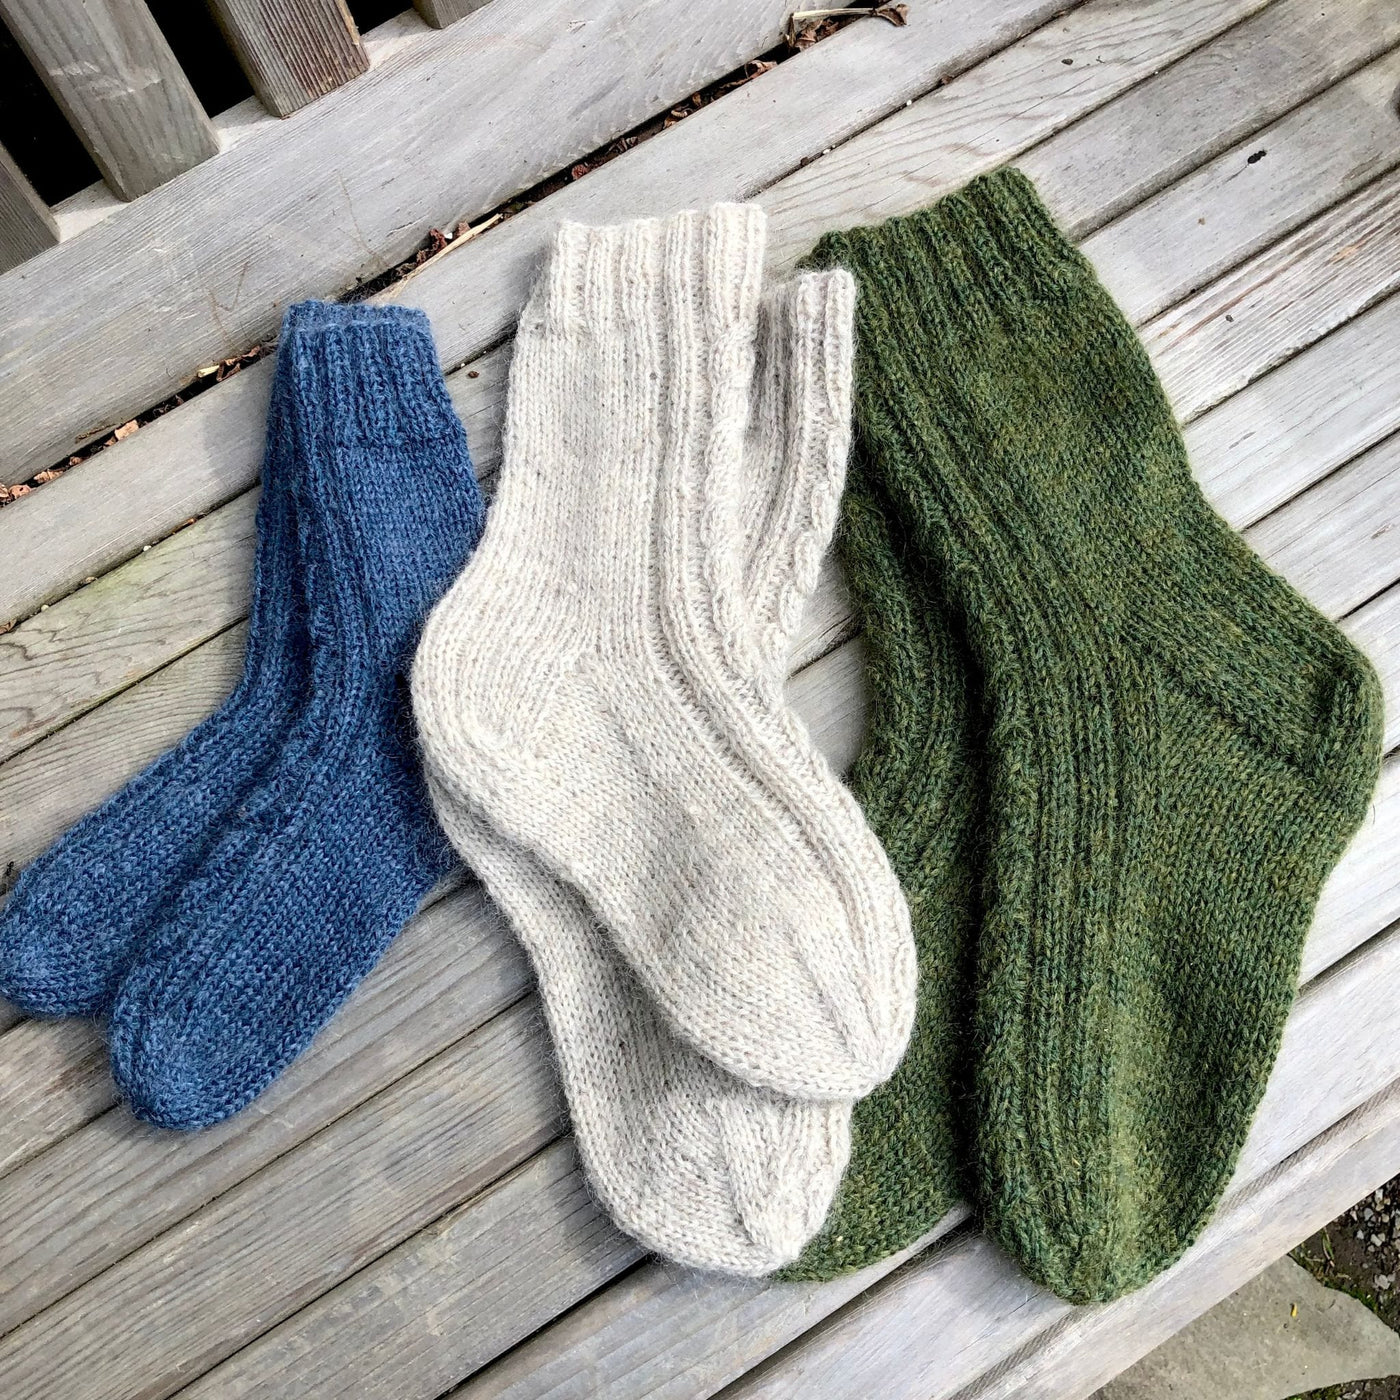 Fuzzypeg Socks by Mary O'Shea in Rambler